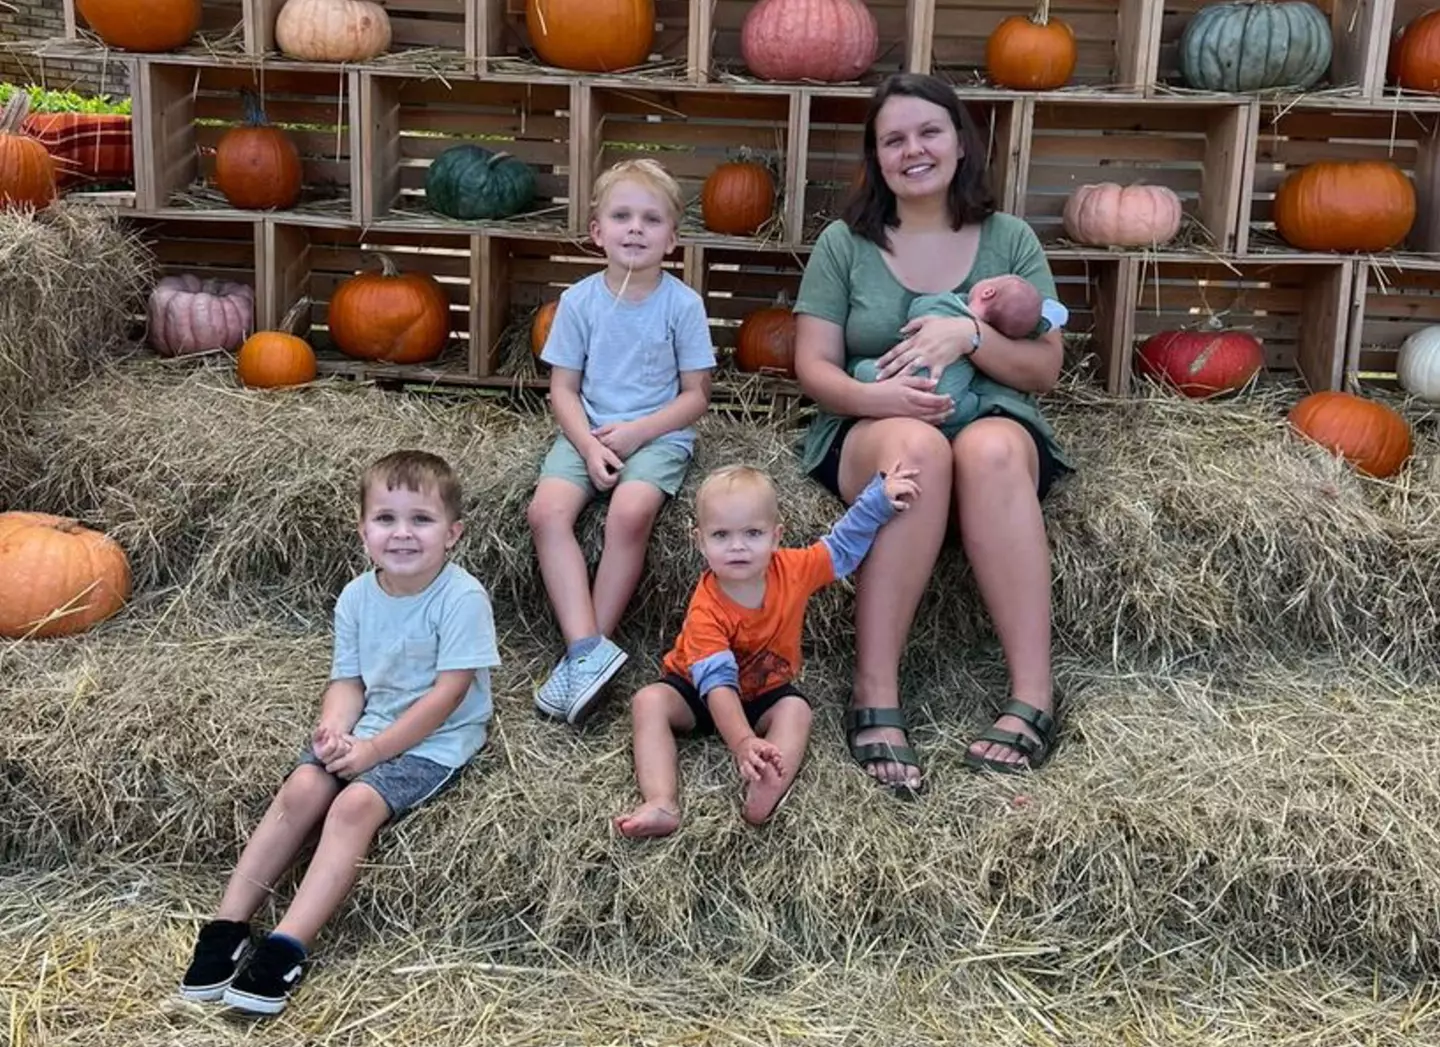 Erica Swinehart has four sons.